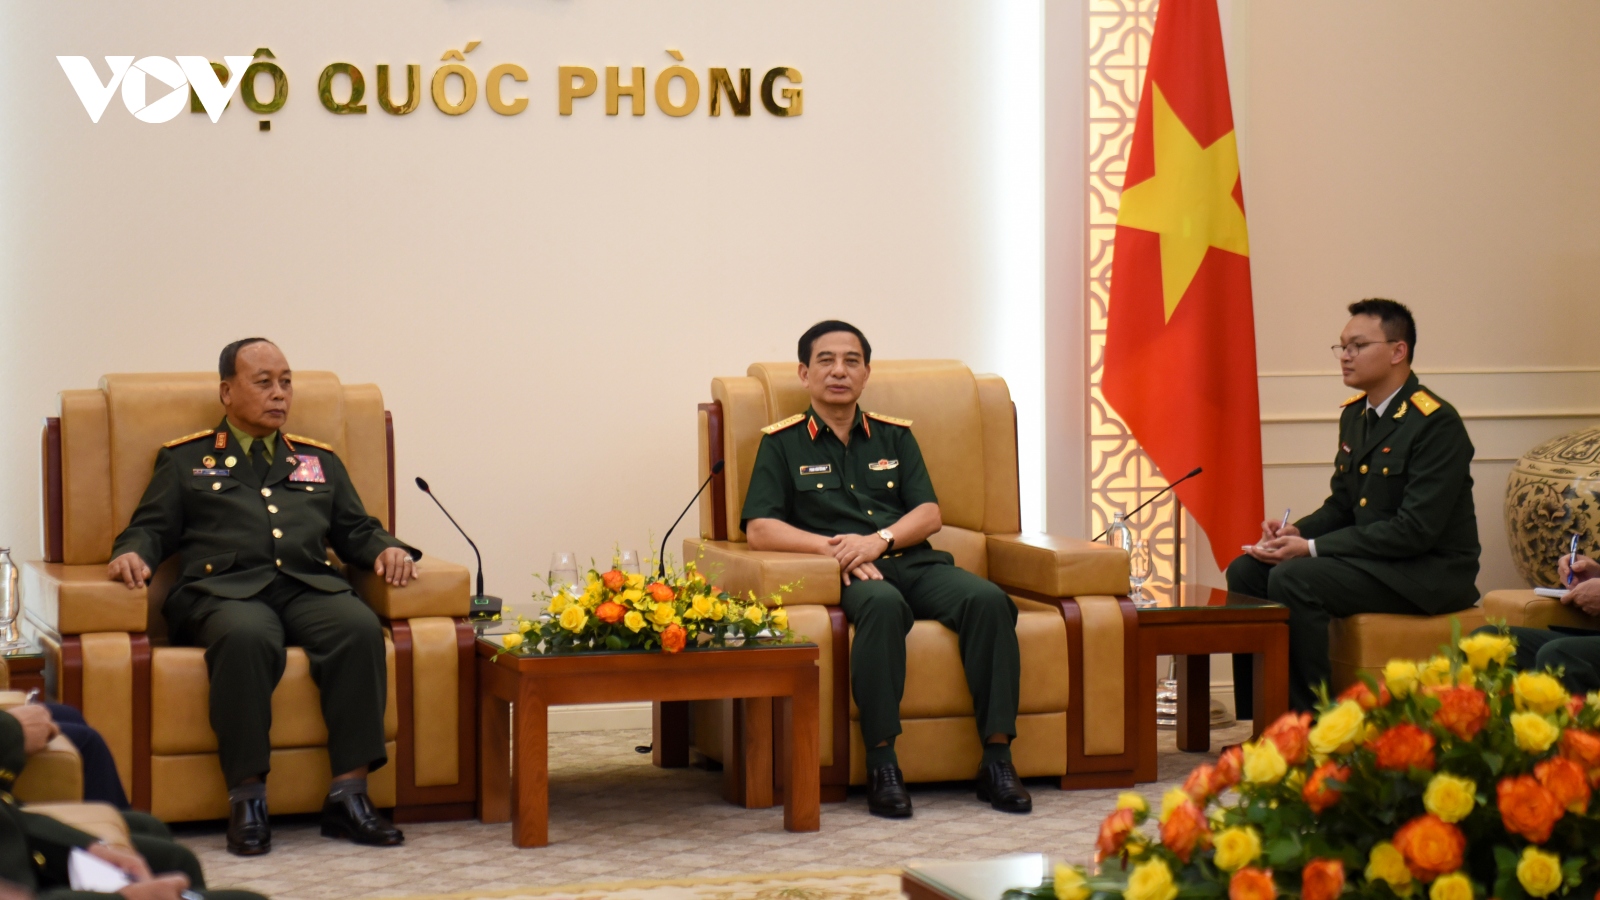 Quan hệ giữa quân đội Việt Nam và Lào là "đặc biệt của đặc biệt"